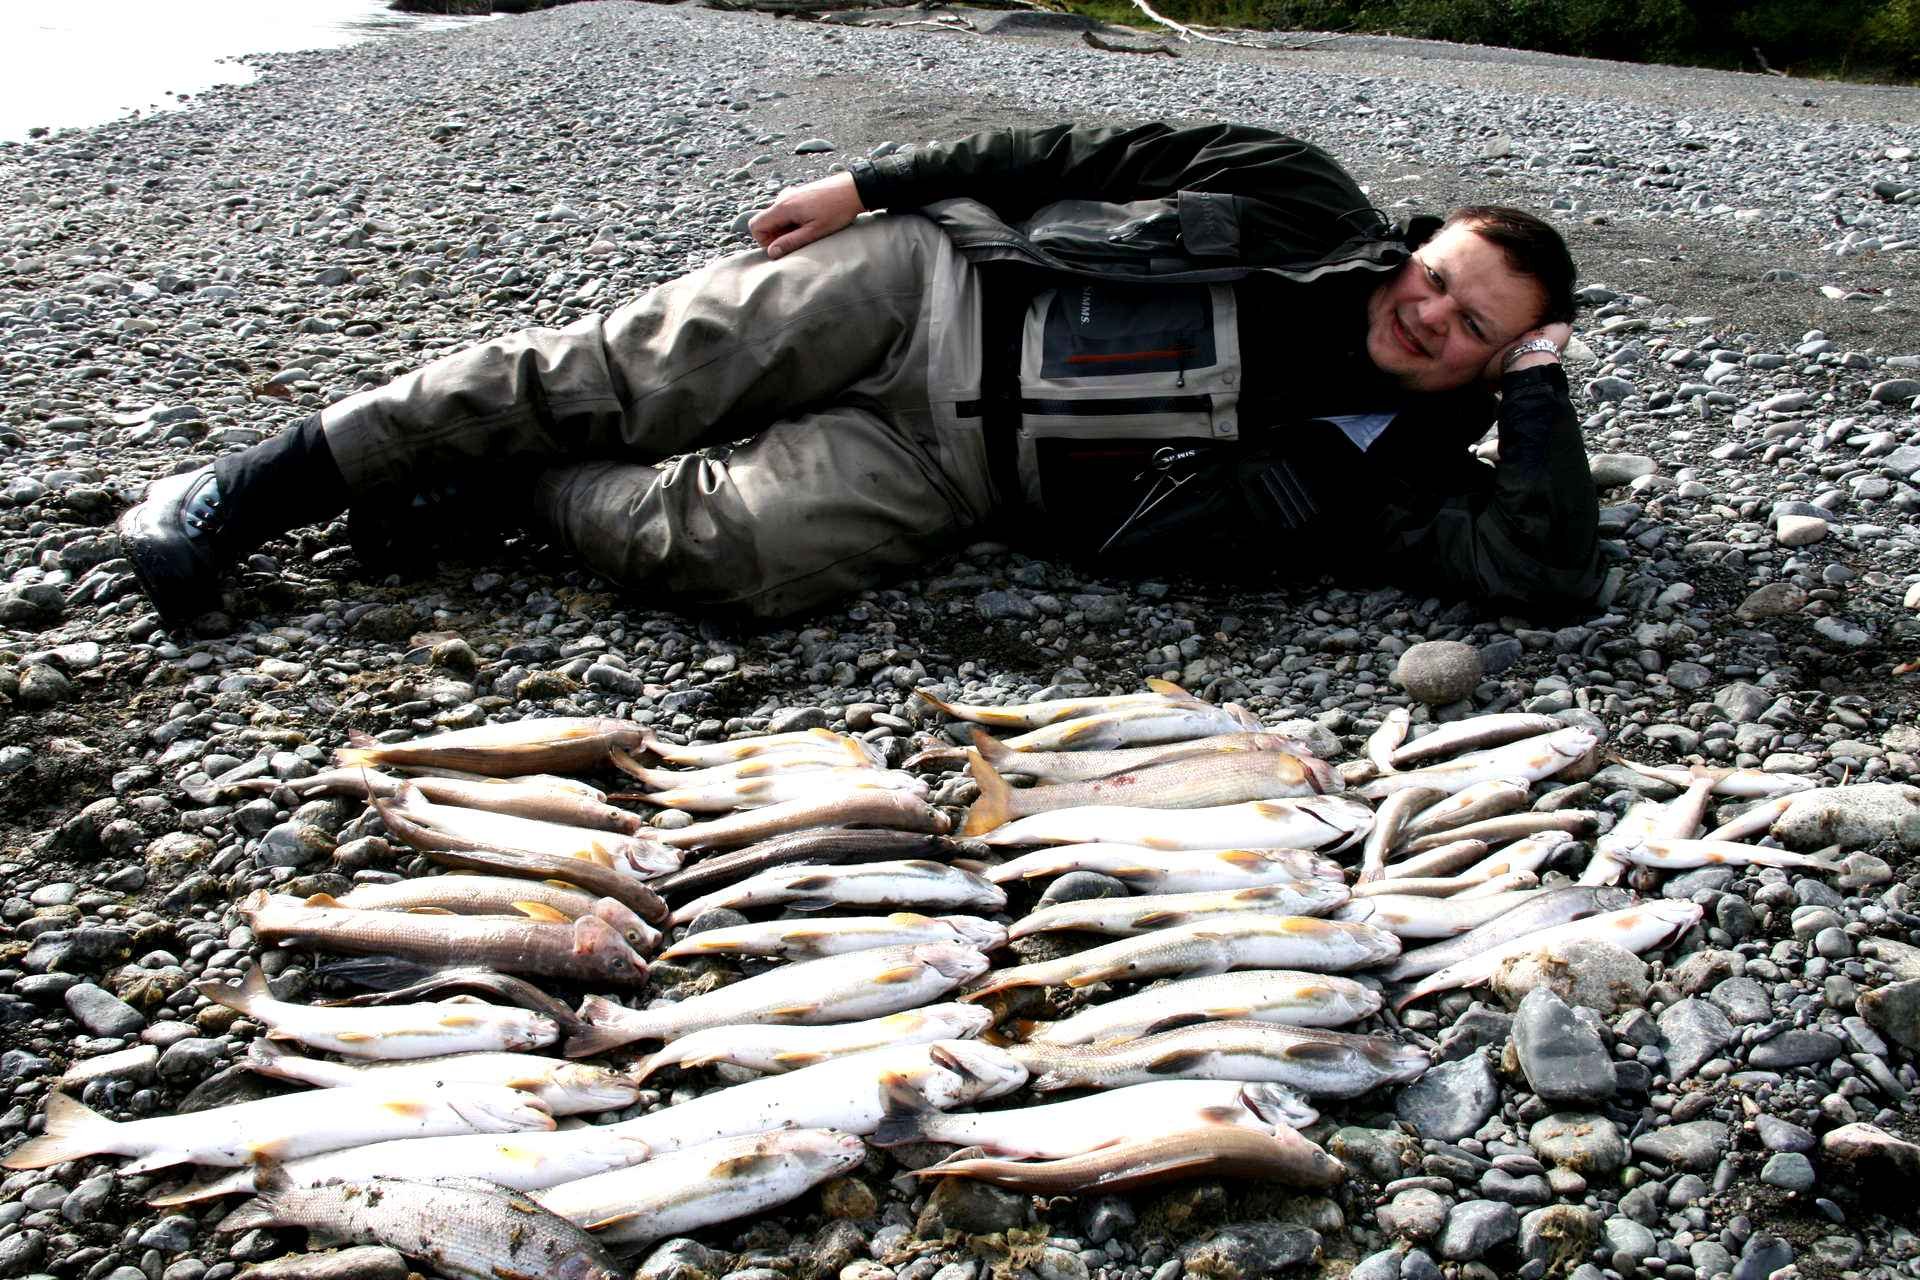 Какую рыбу ловили рыбаки. Петропавловск-Камчатский рыбалка. Рыбалка на Камчатке. Охота и рыболовство. Рыба Камчатки.